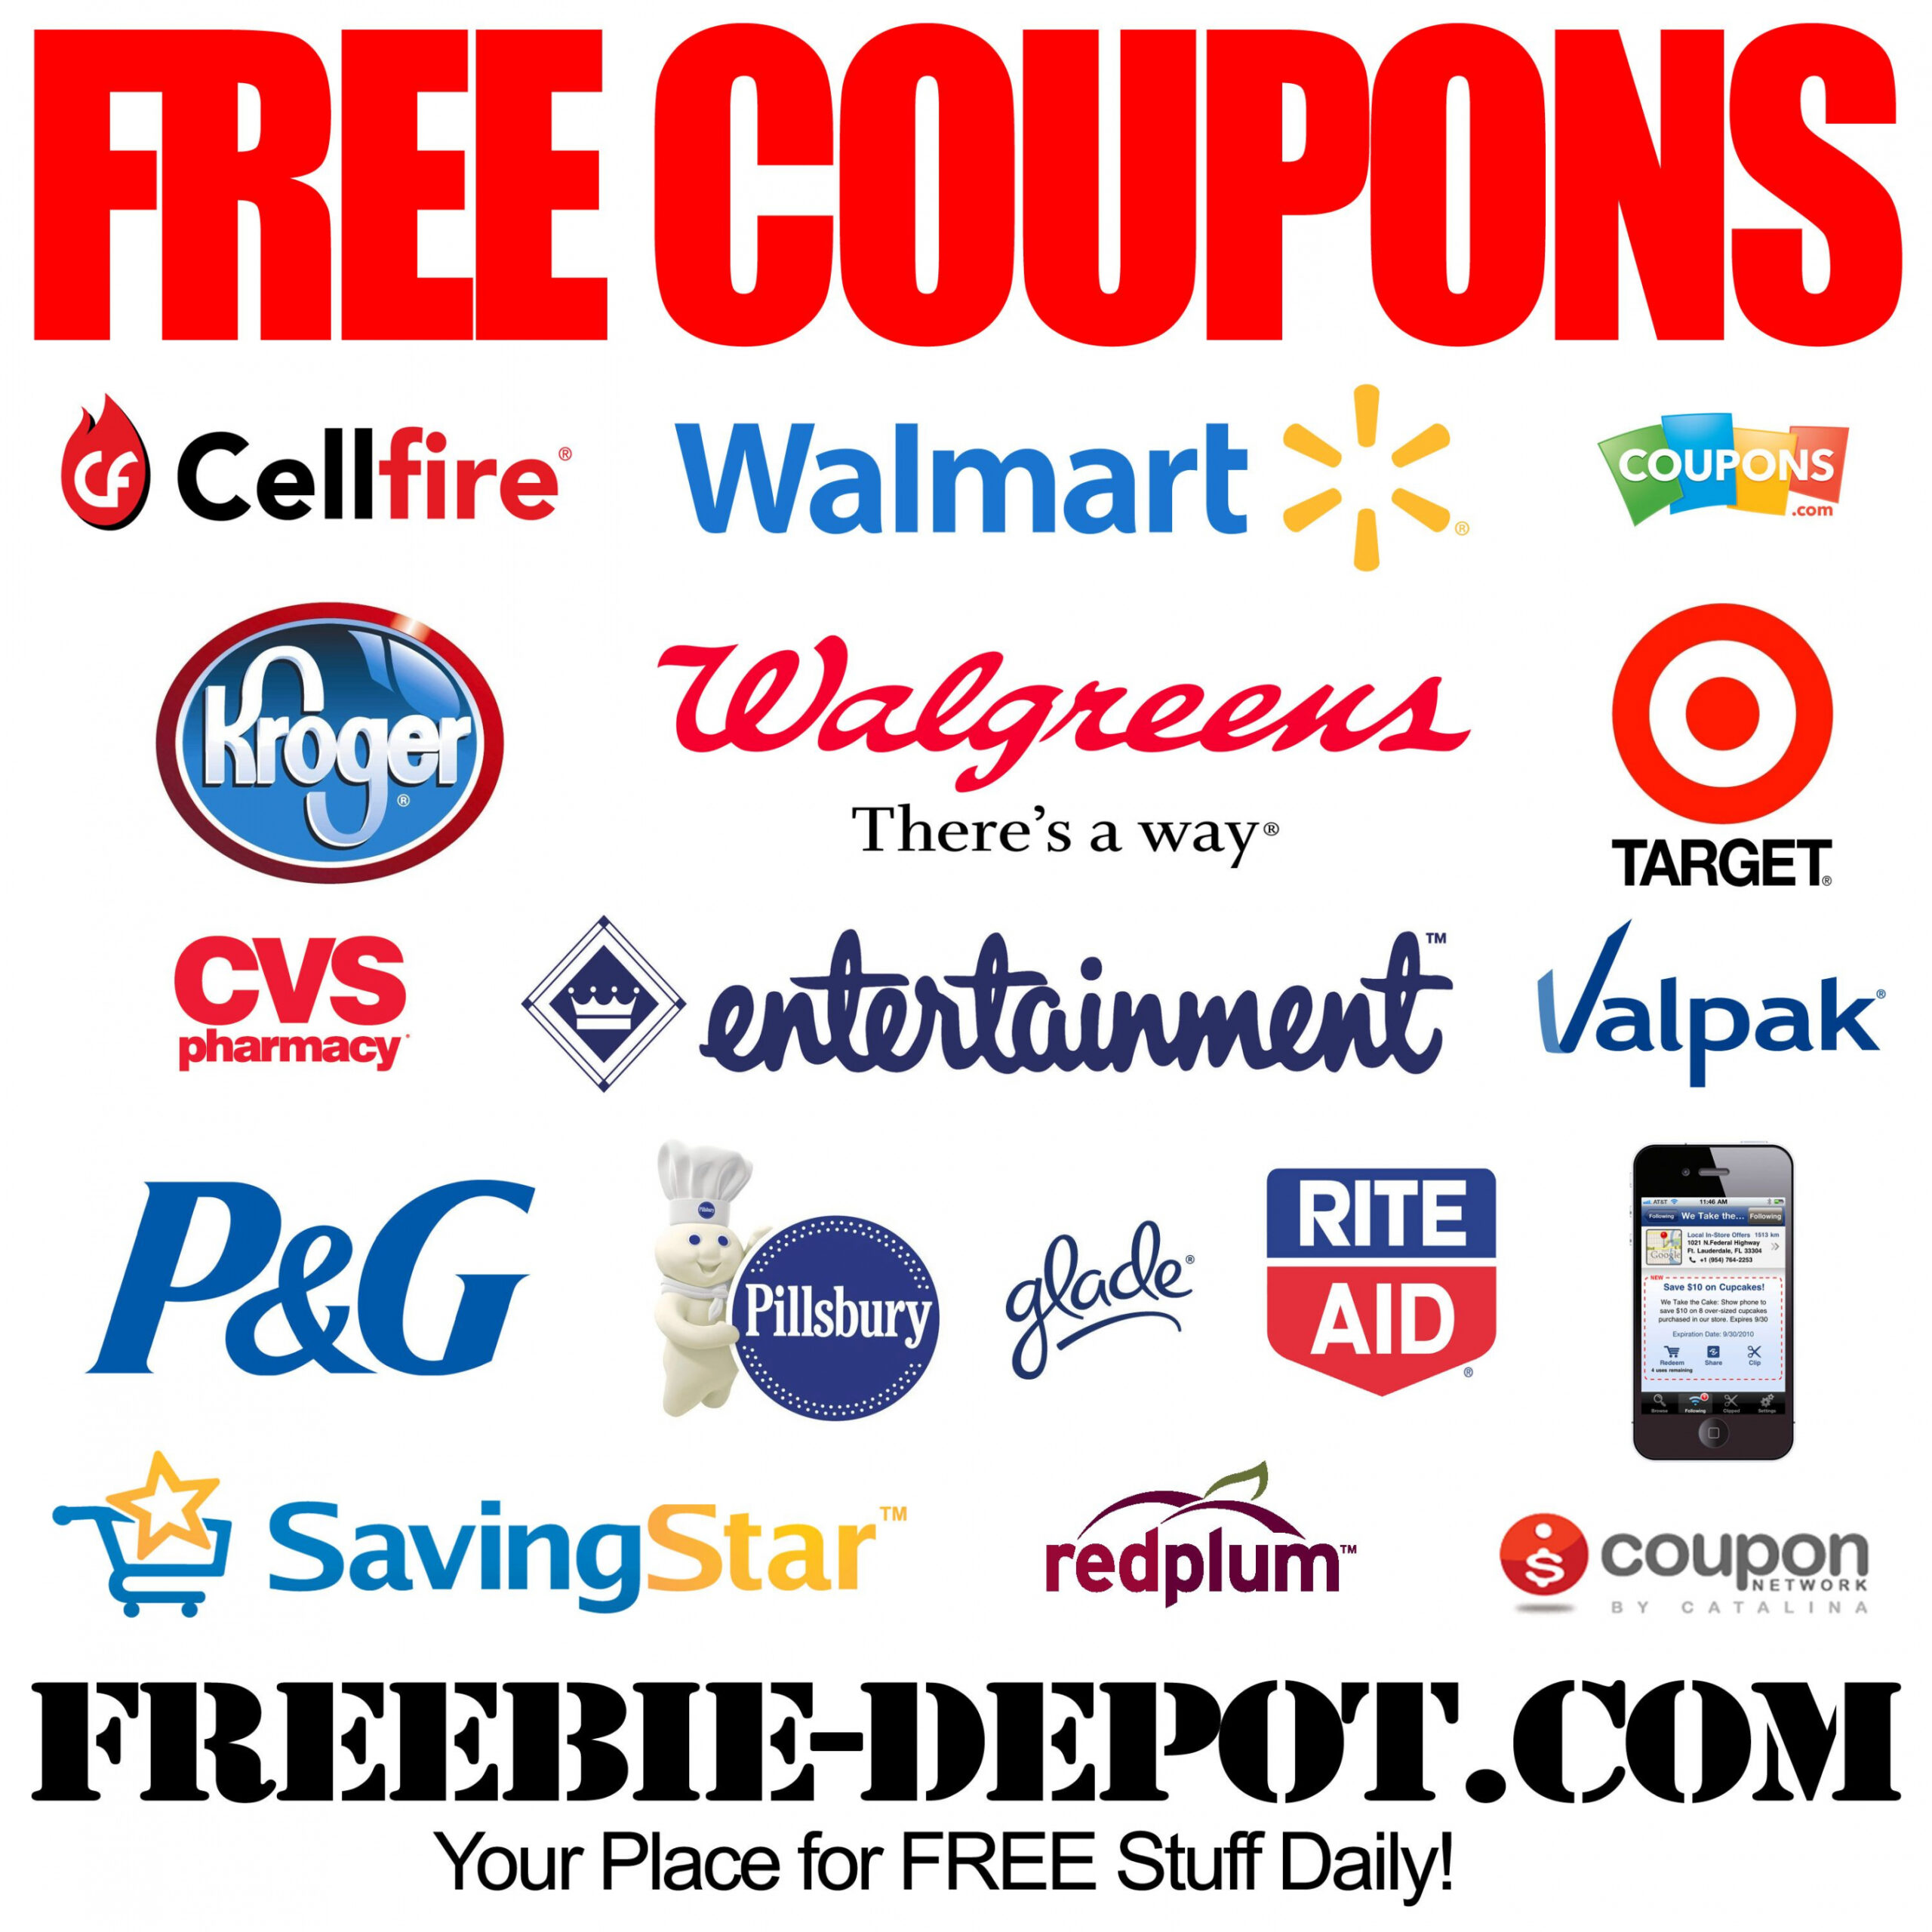 Free Printable Grocery Coupons - Printable - FREE Cooupons - FREE Printable Coupons - FREE Grocery Coupons